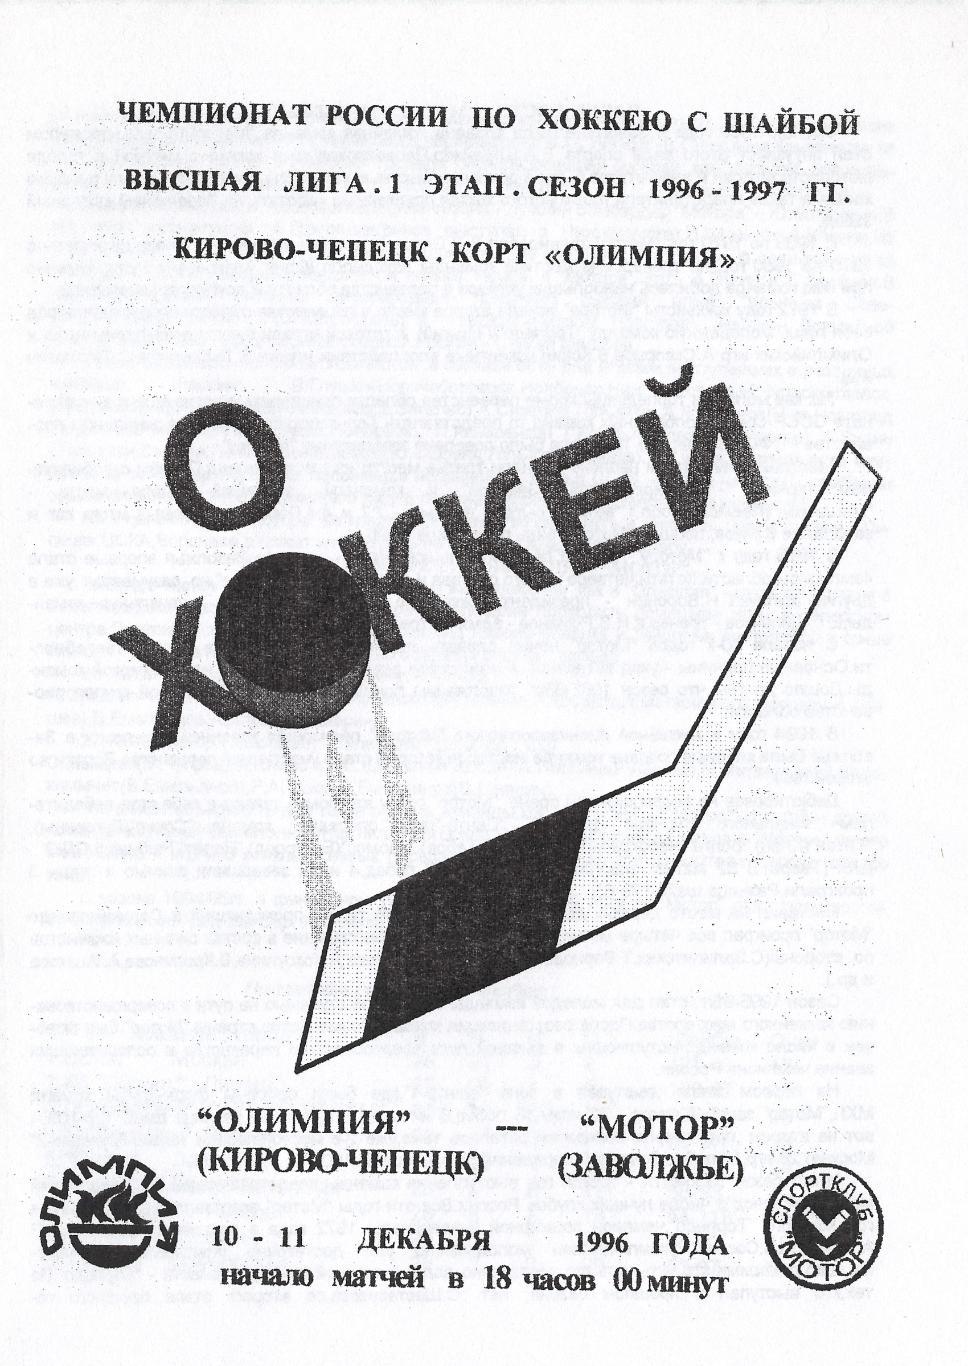 1996/12/10-11 Олимпия Кирово-Чепецк - Мотор Заволжье. Файл PDF